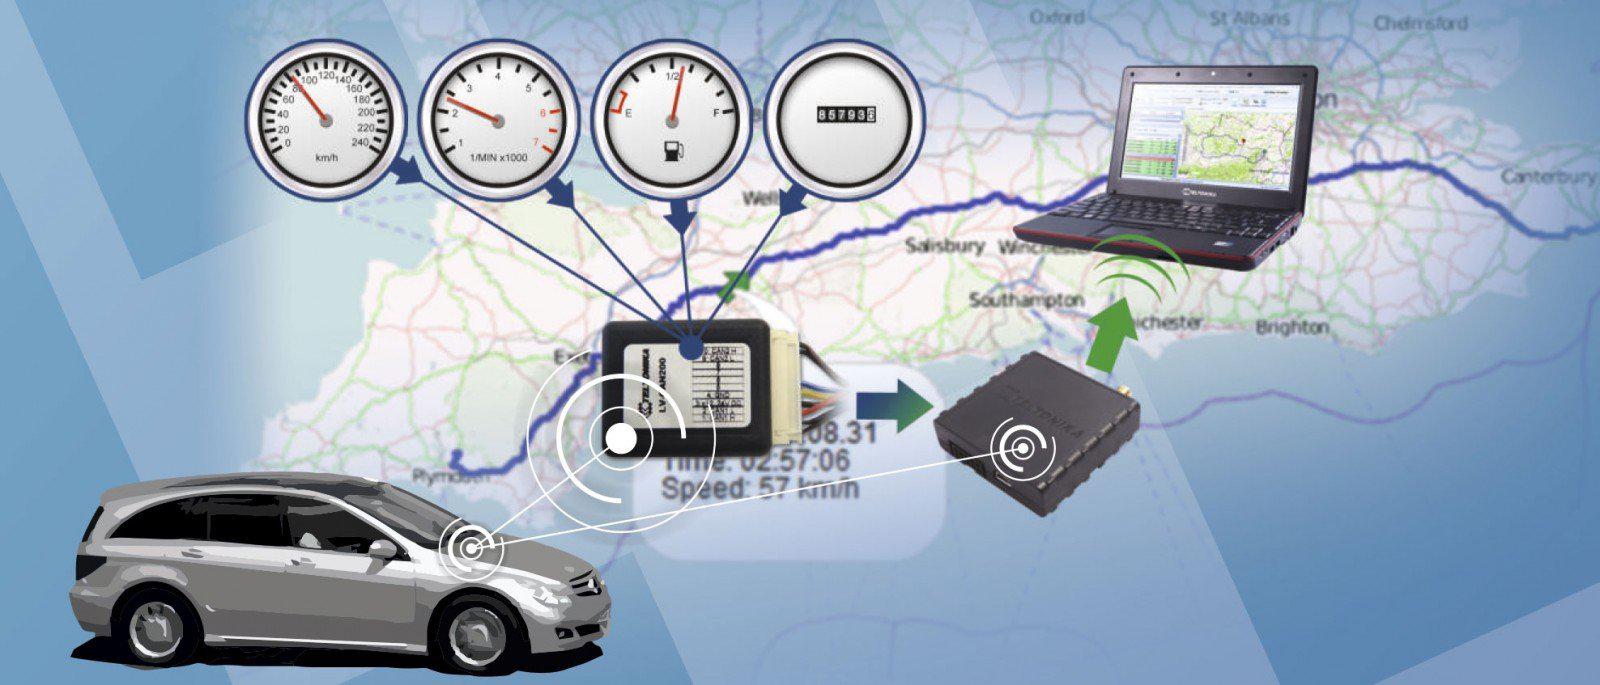 Контроль транспорта мониторинг gps. Спутниковая система слежения Телтоника. GPS мониторинг транспорта. Система GPS мониторинга транспорта. ГЛОНАСС для автомобиля.